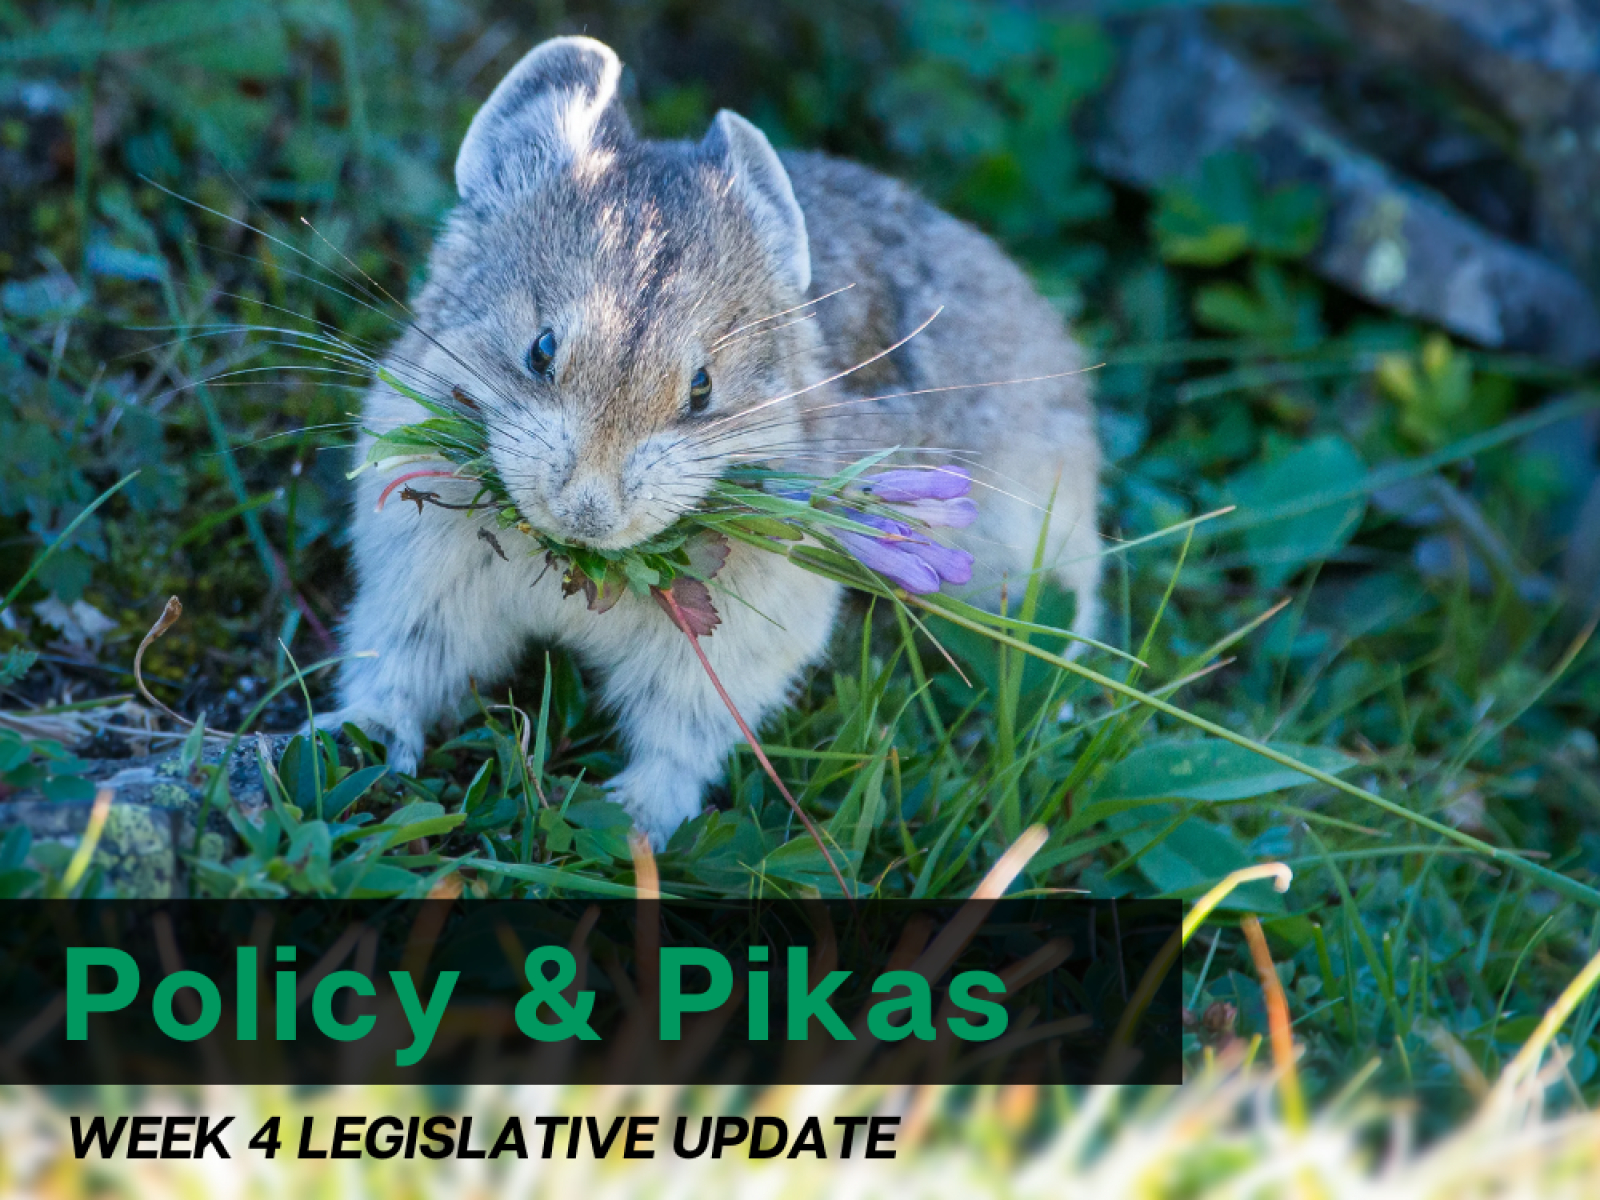 Policy and Pikas: Week 4 Legislative Update